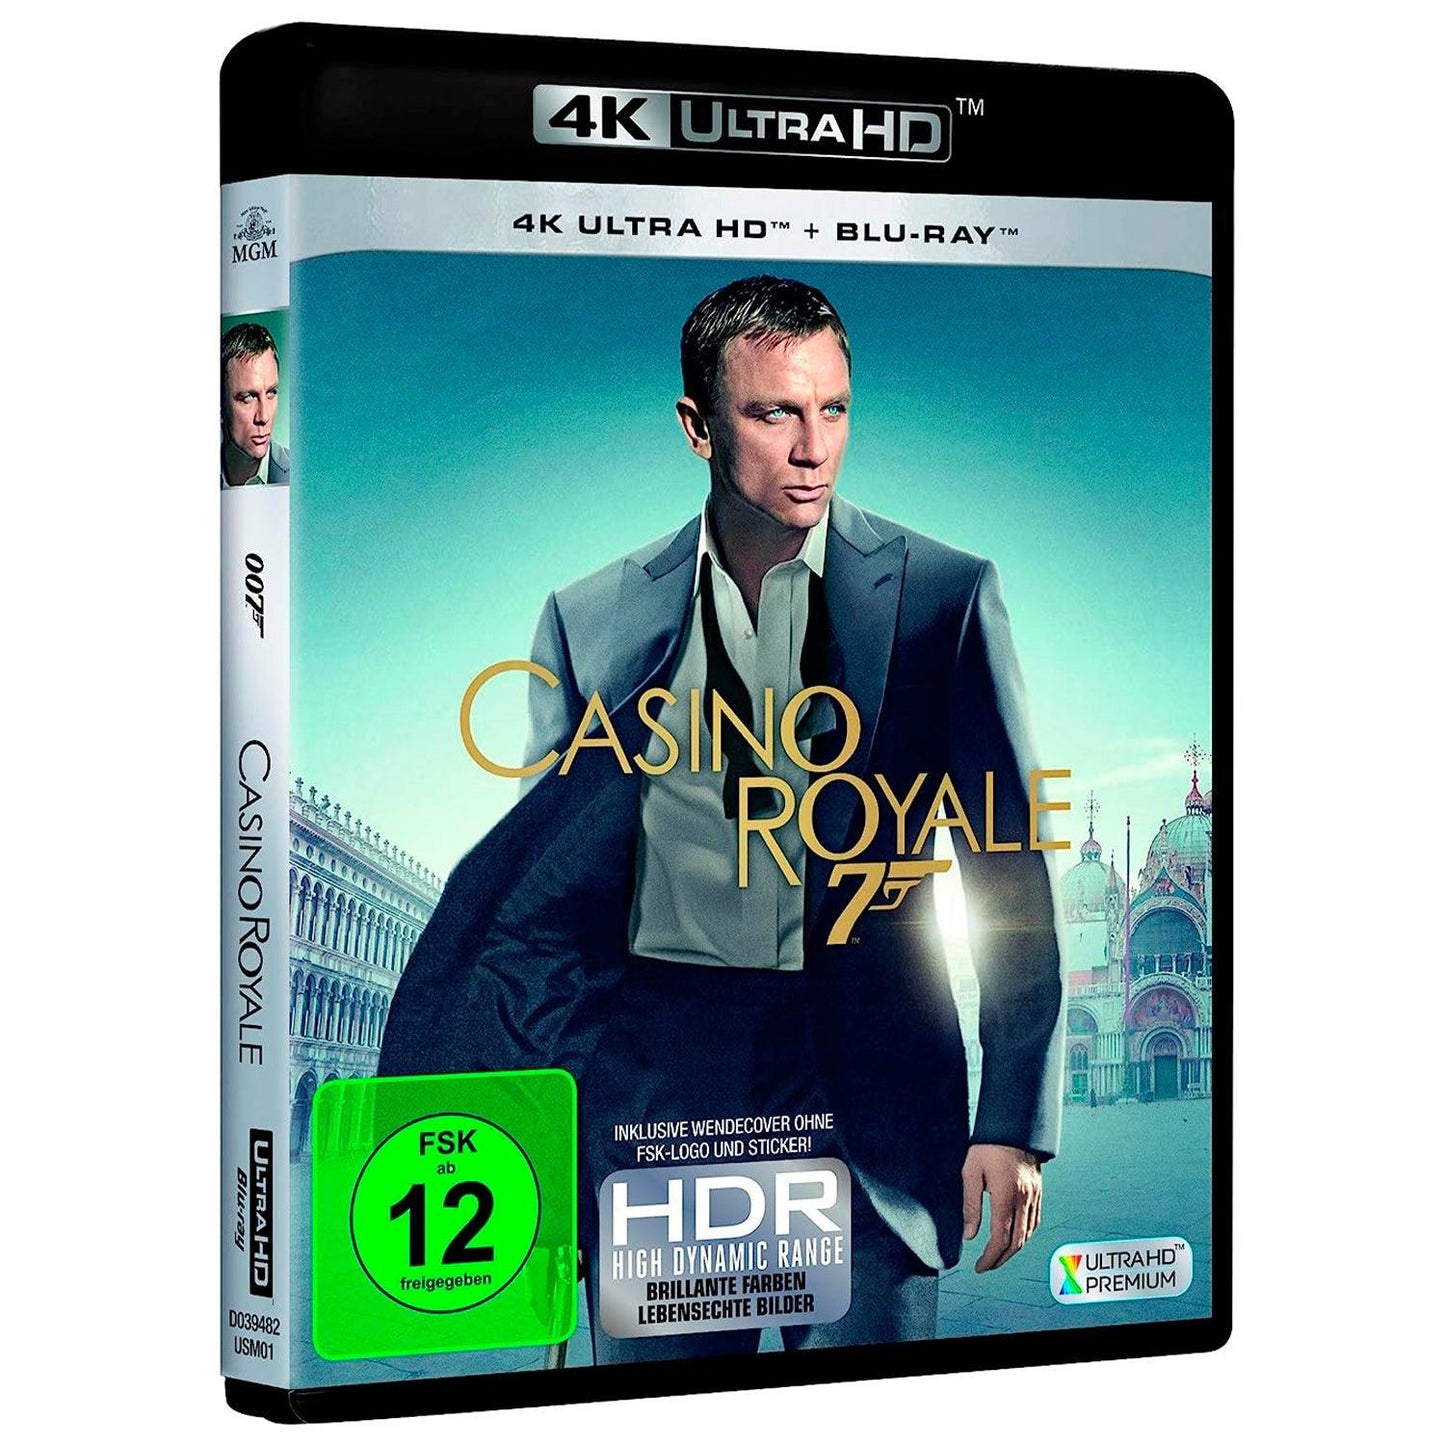 007: Казино Рояль (4K UHD + Blu-ray)